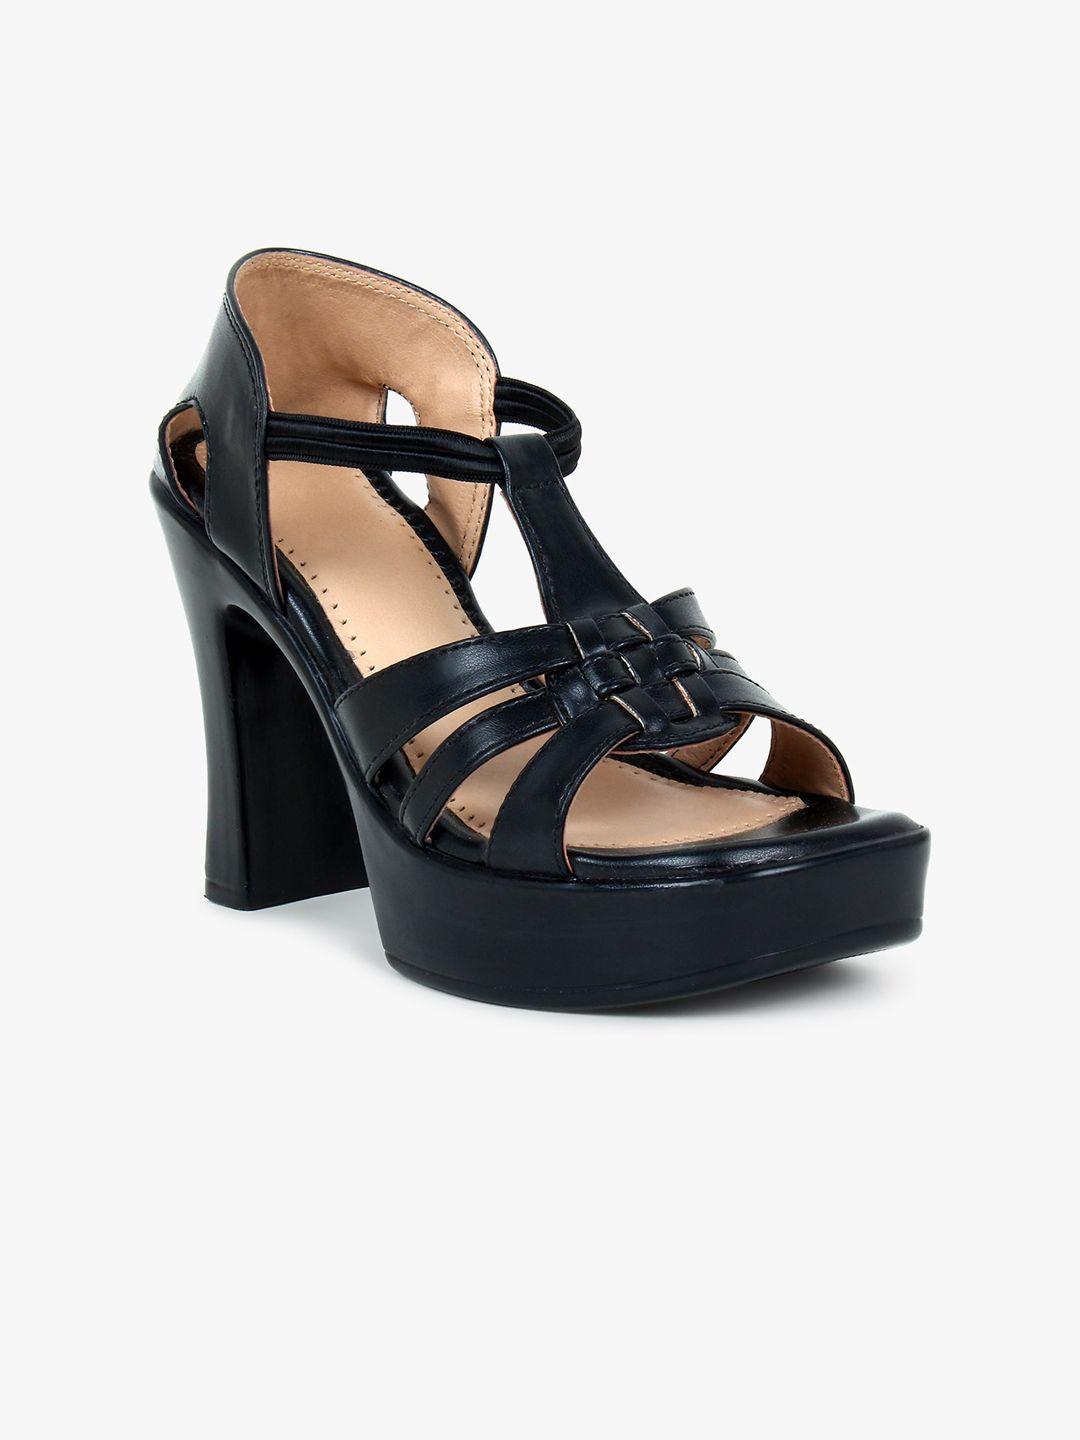 glitzy galz black platform heels